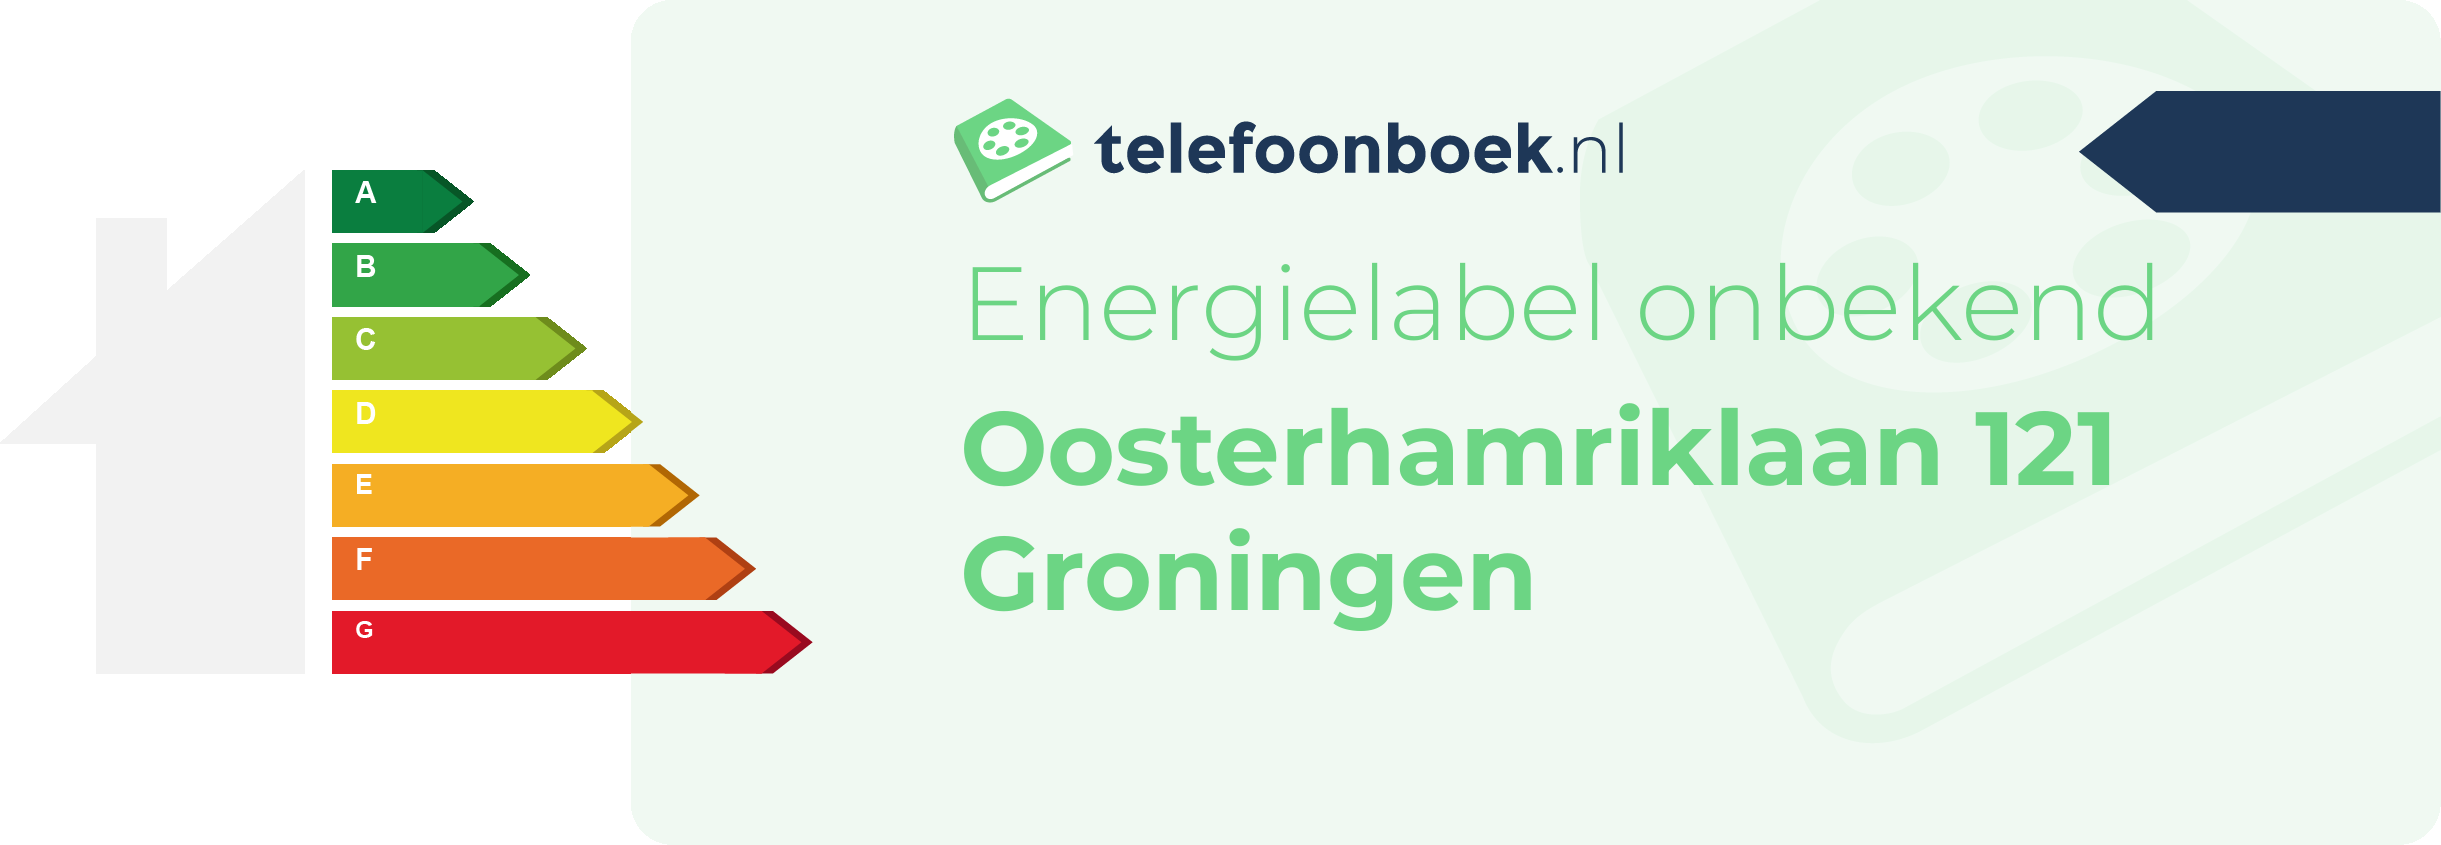 Energielabel Oosterhamriklaan 121 Groningen